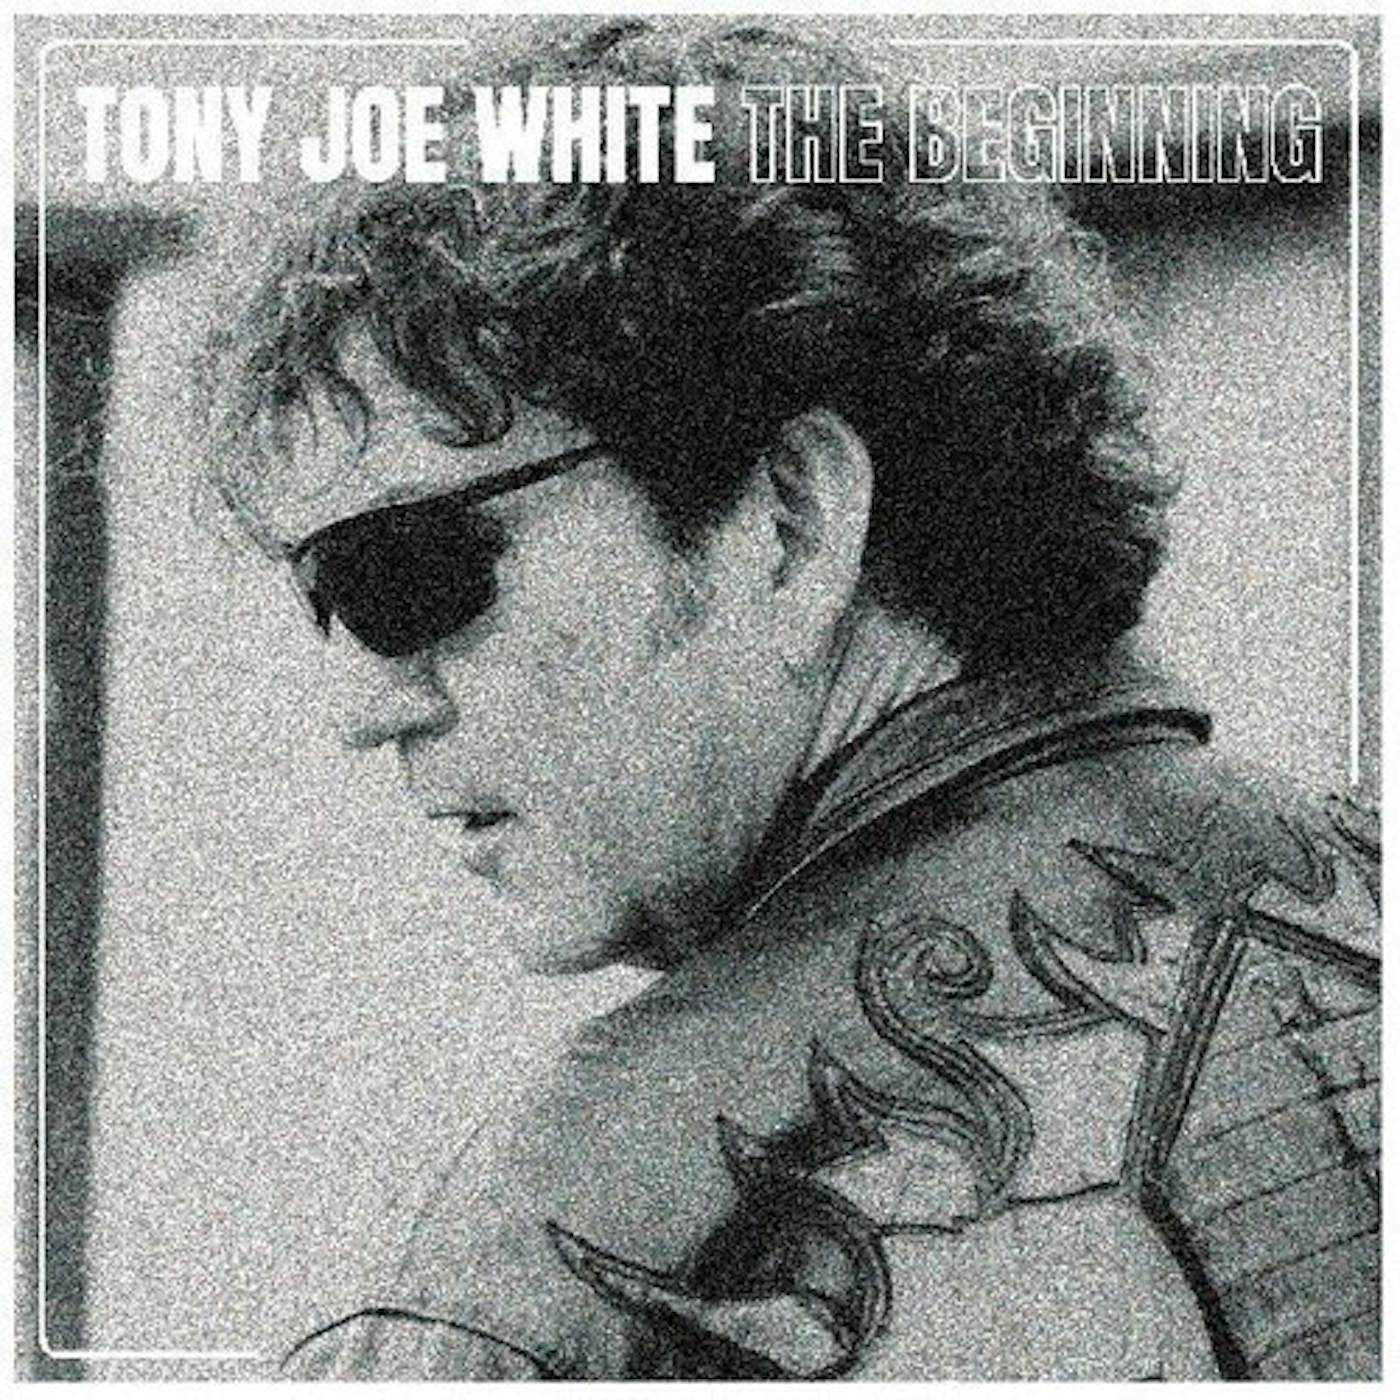 Tony Joe White BEGINNING CD